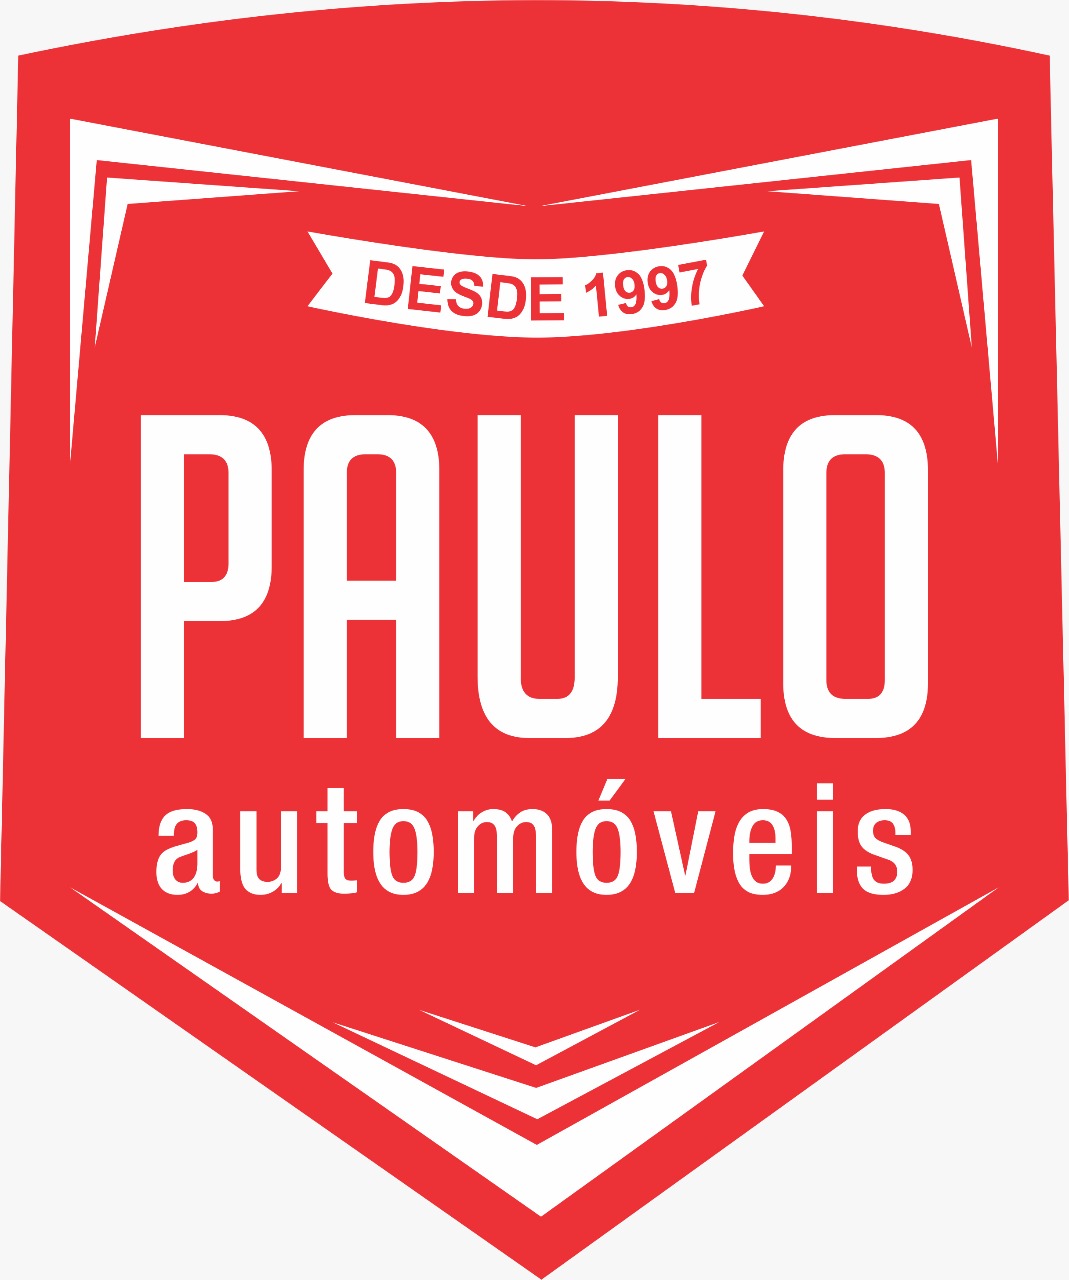 Paulo Automóveis